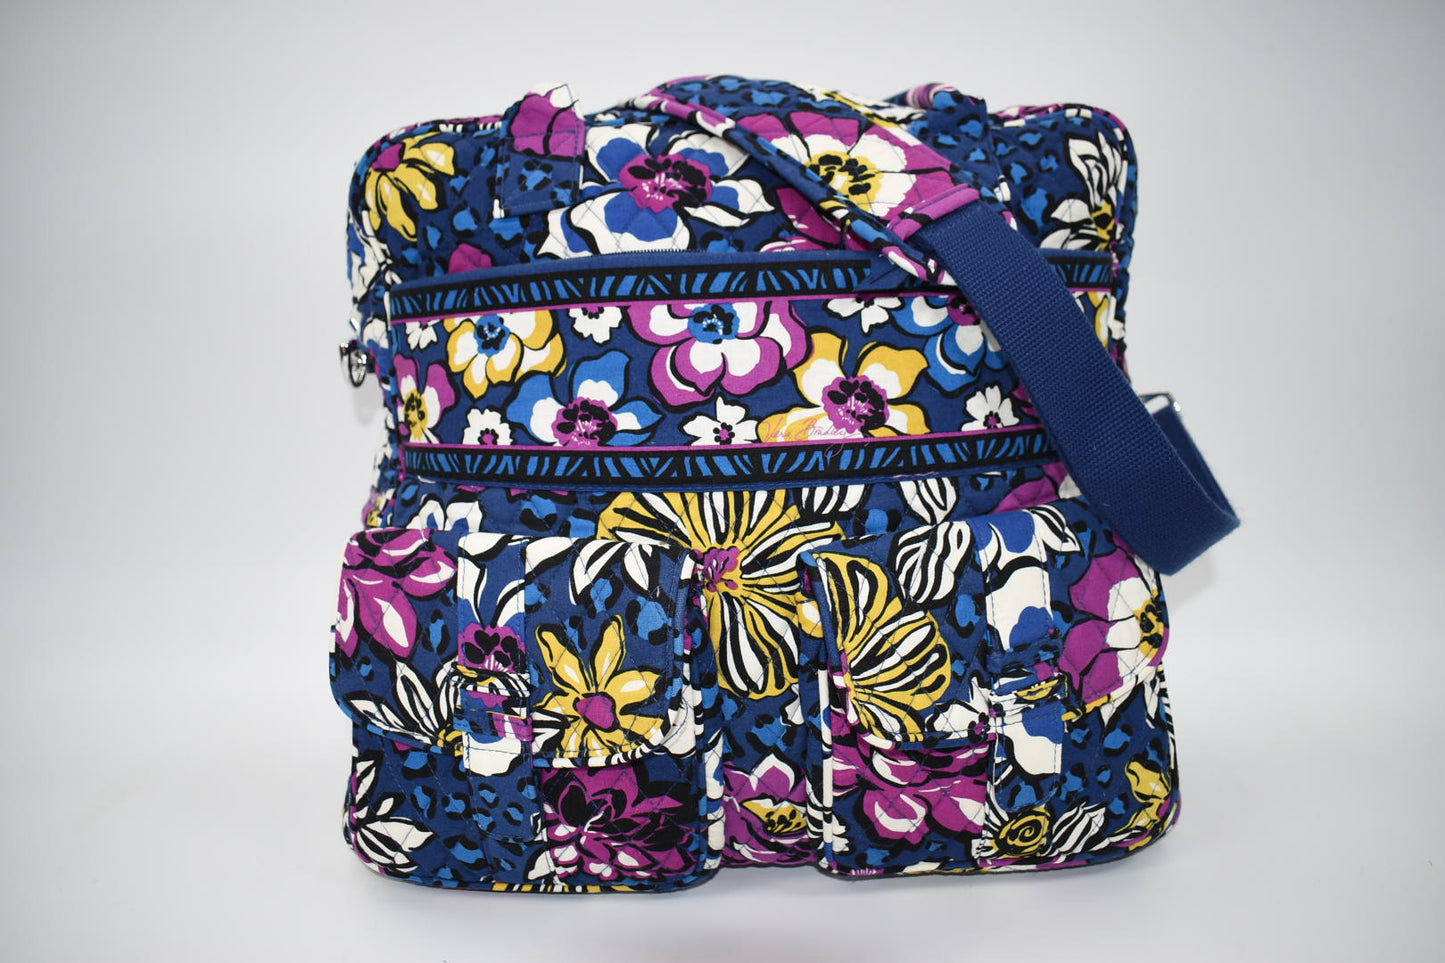 Vera Bradley Large Travel Bag in "African Violet" Pattern